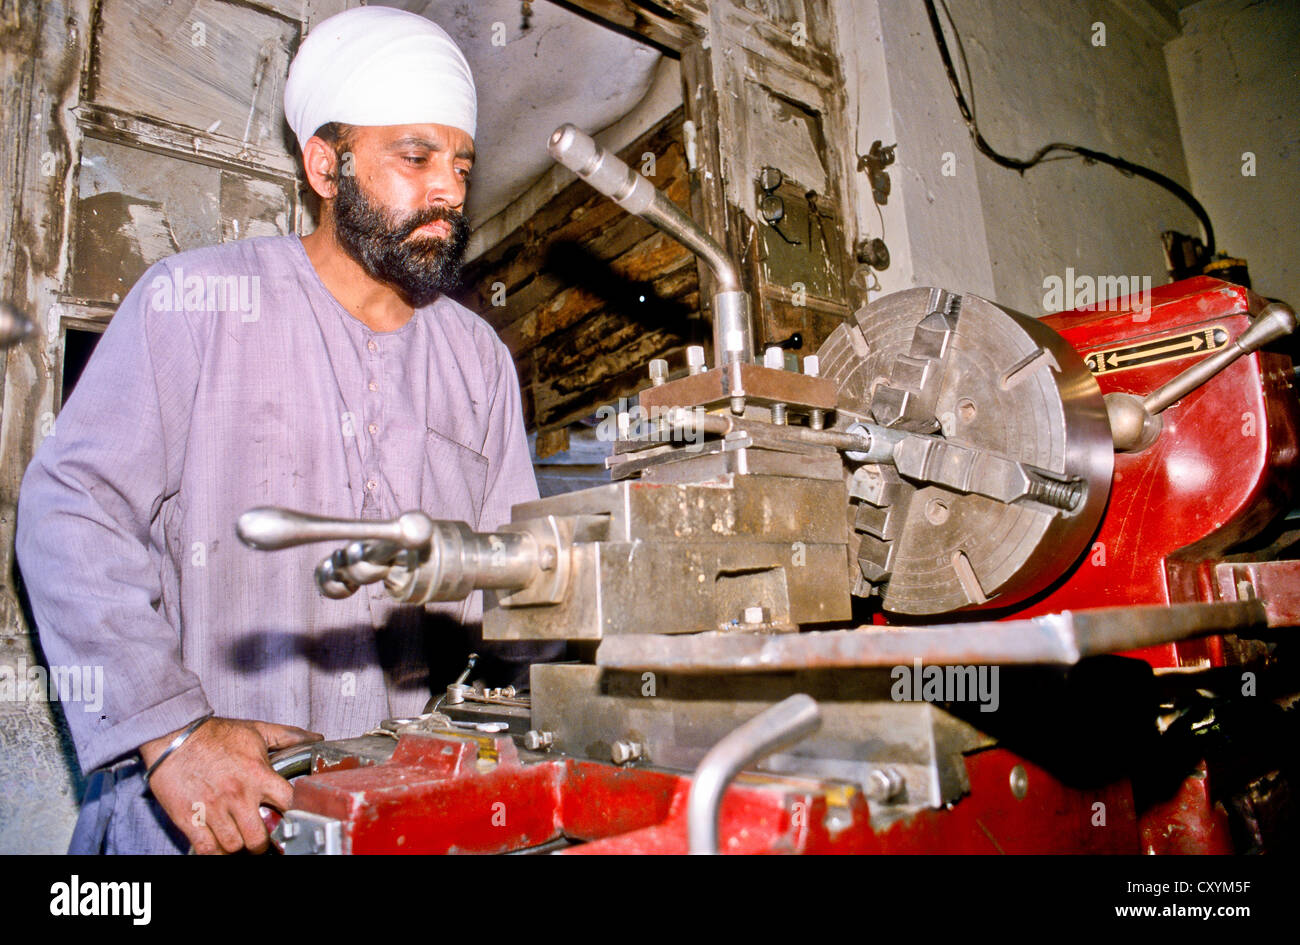 Mechaniker arbeiten bei einer Drehmaschine, Mandi, Indien, Asien  Stockfotografie - Alamy